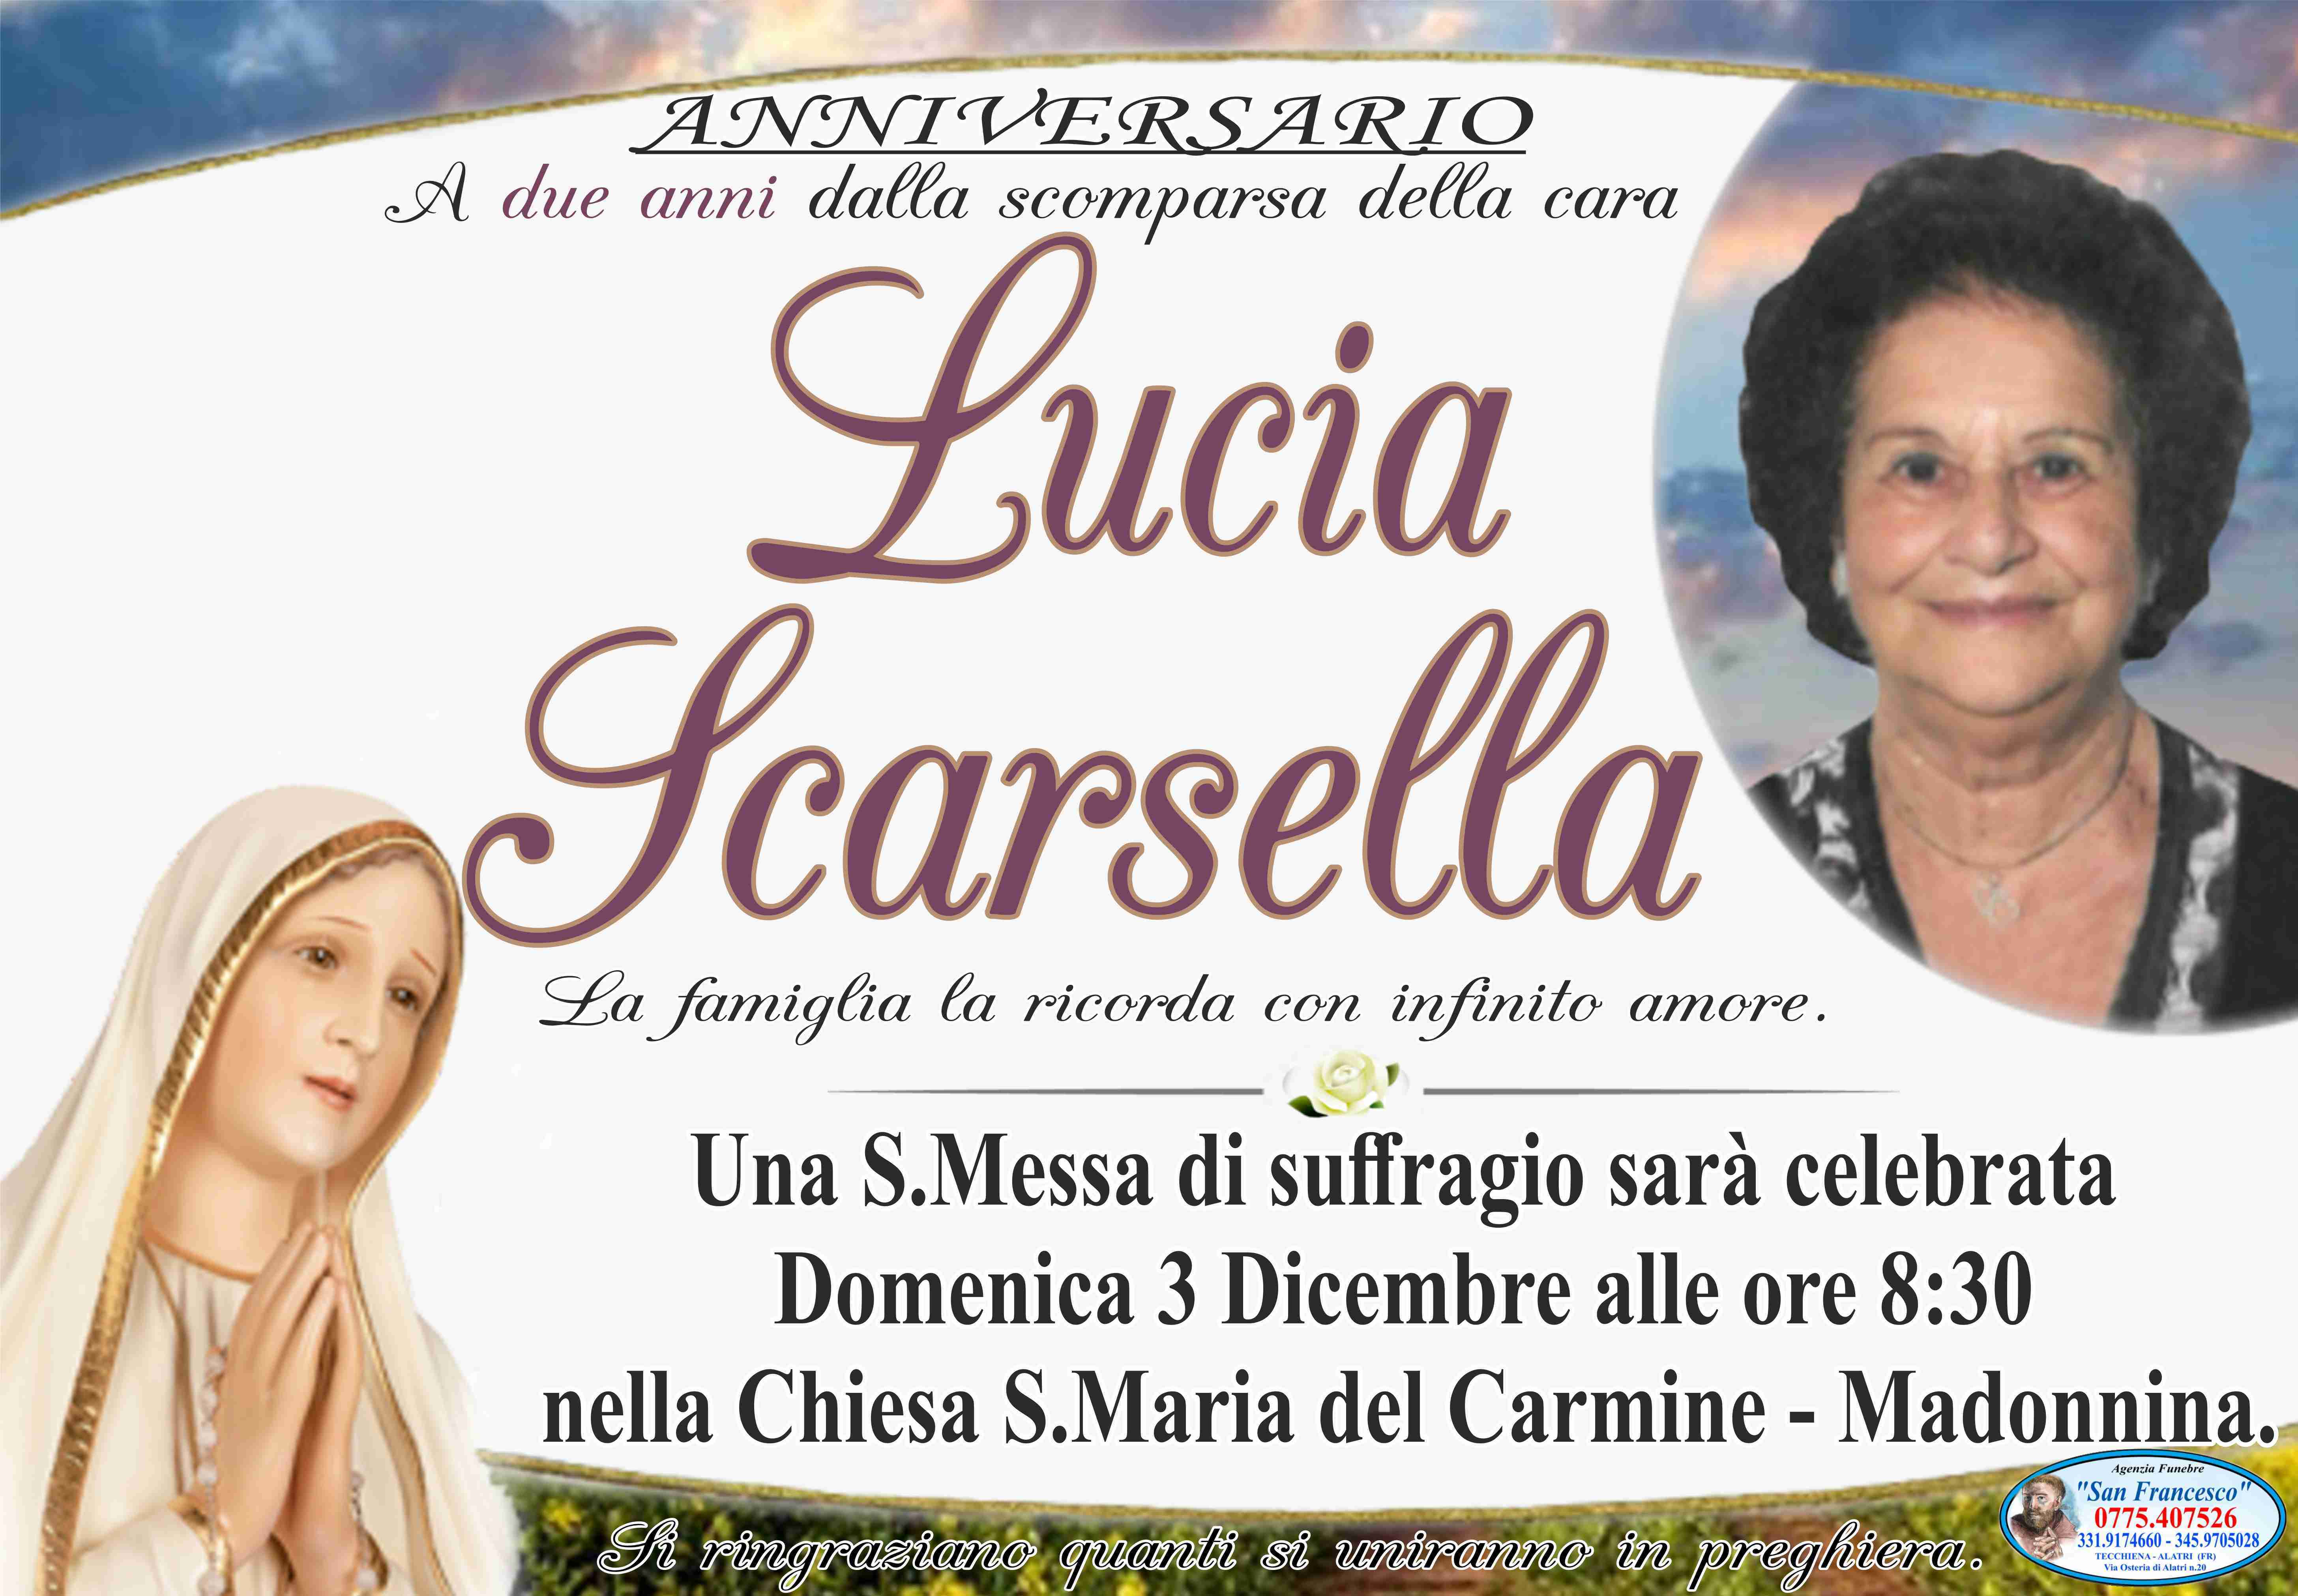 Lucia Scarsella